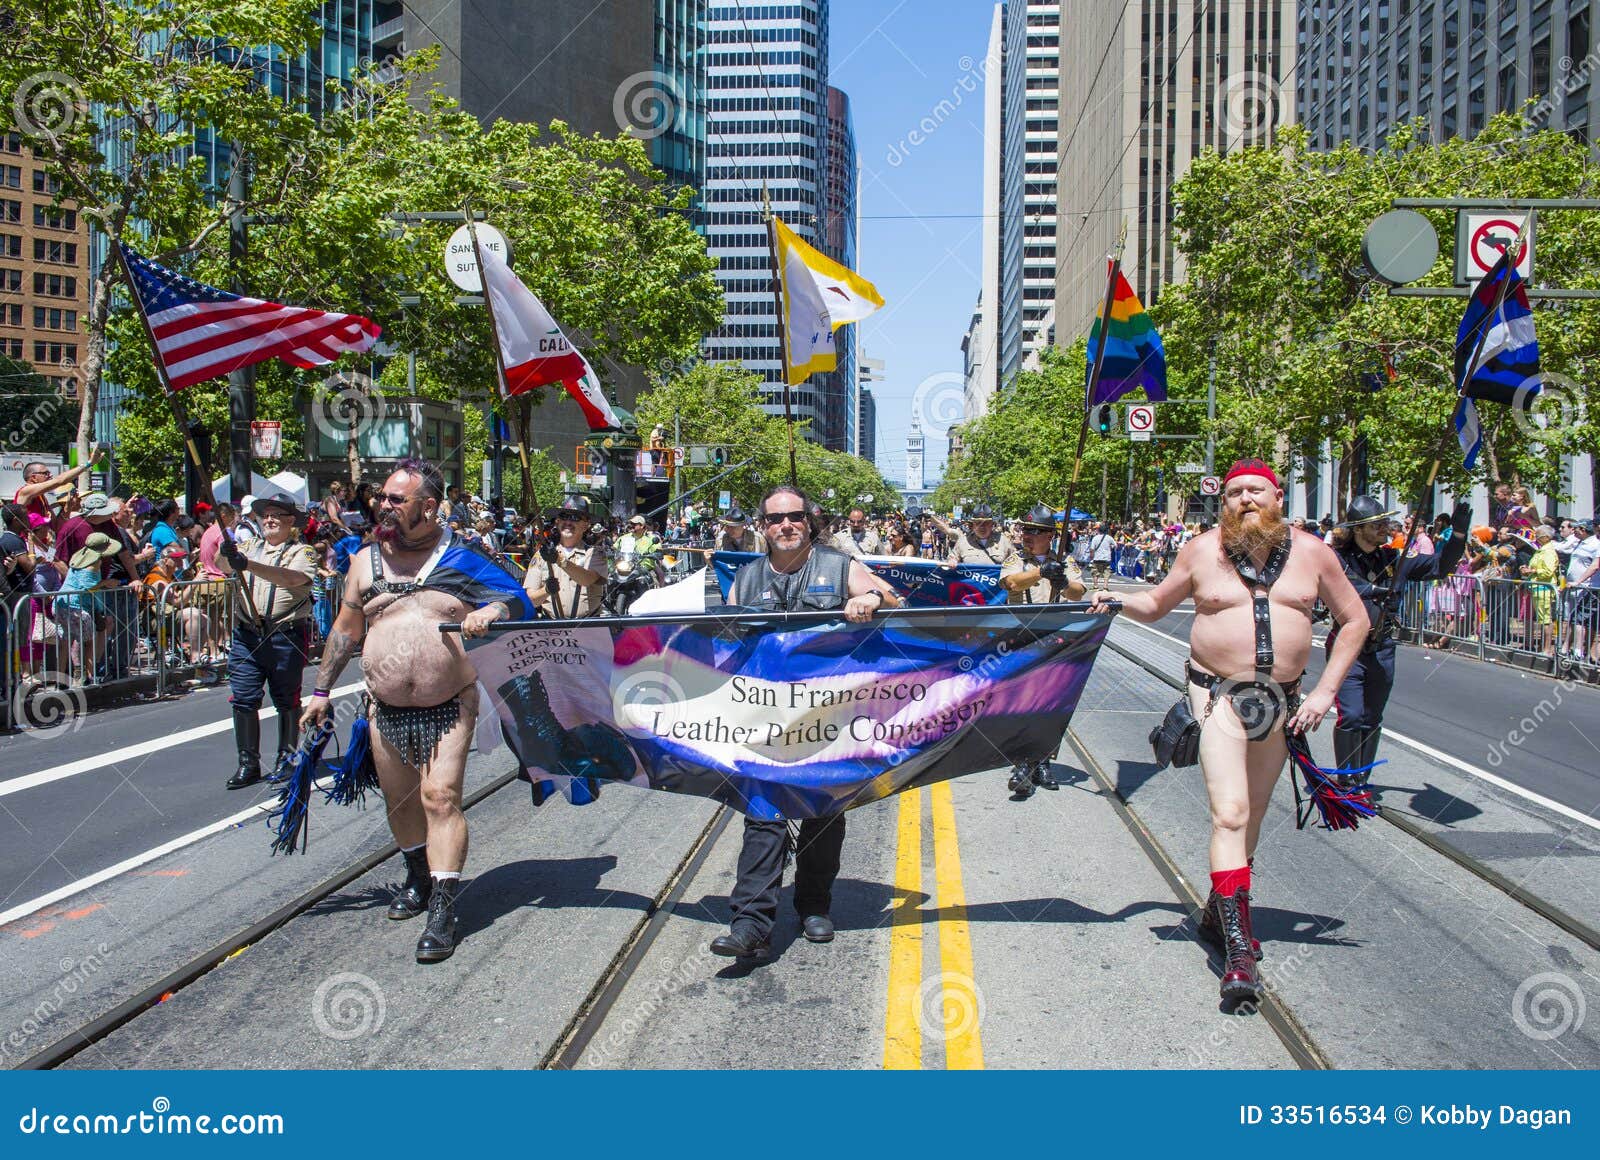 самые большие геи парад фото 91